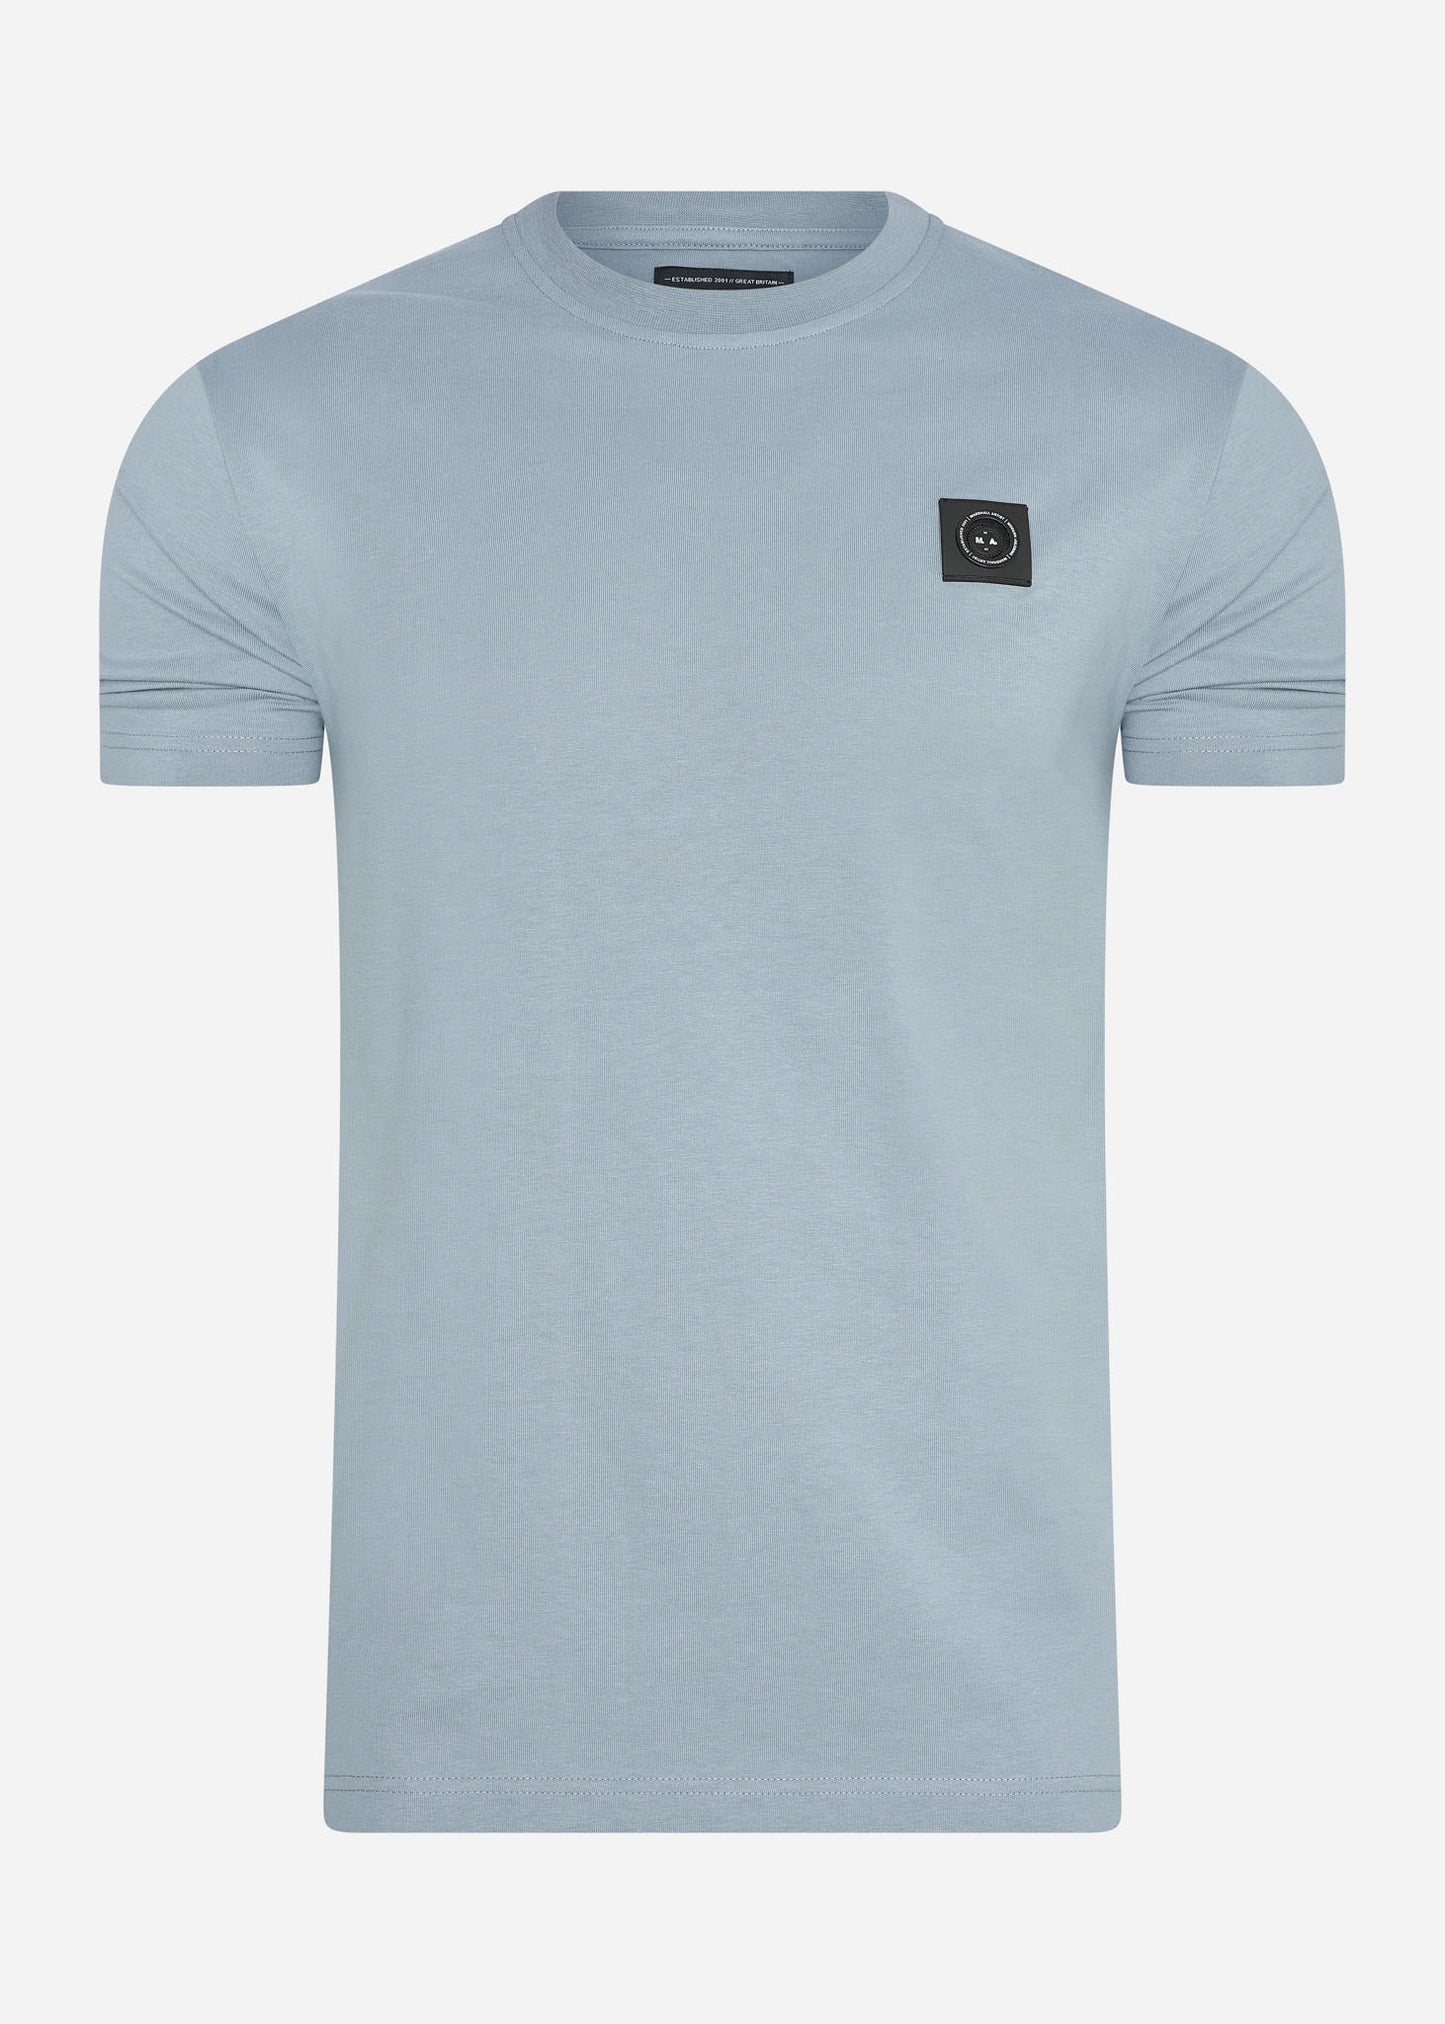 Marshall Artist T-shirts  Siren t-shirt - flint blue 